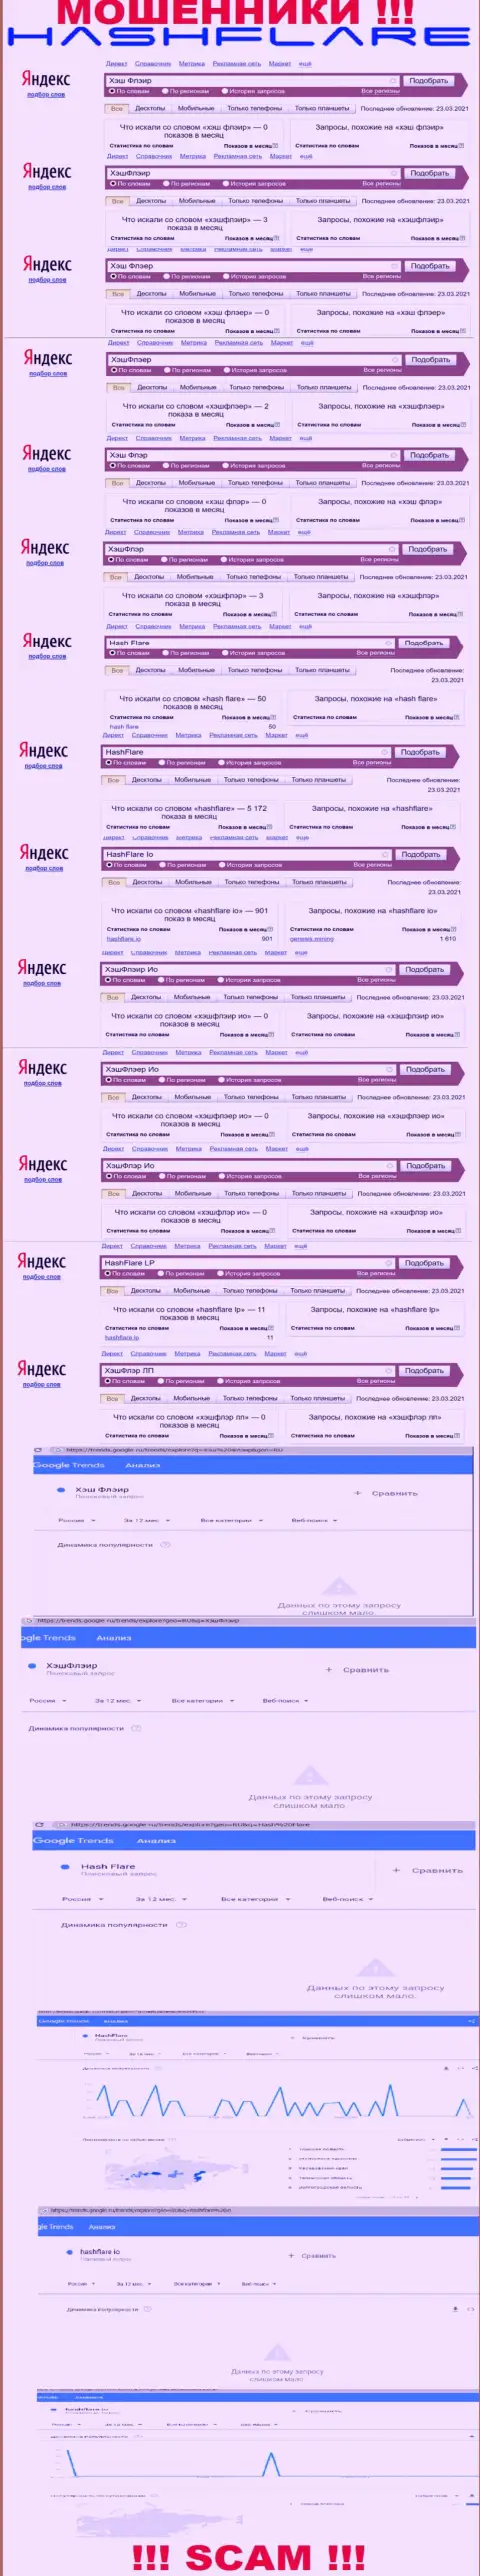 Суммарное число online запросов в поисковиках сети internet по бренду мошенников HashFlare